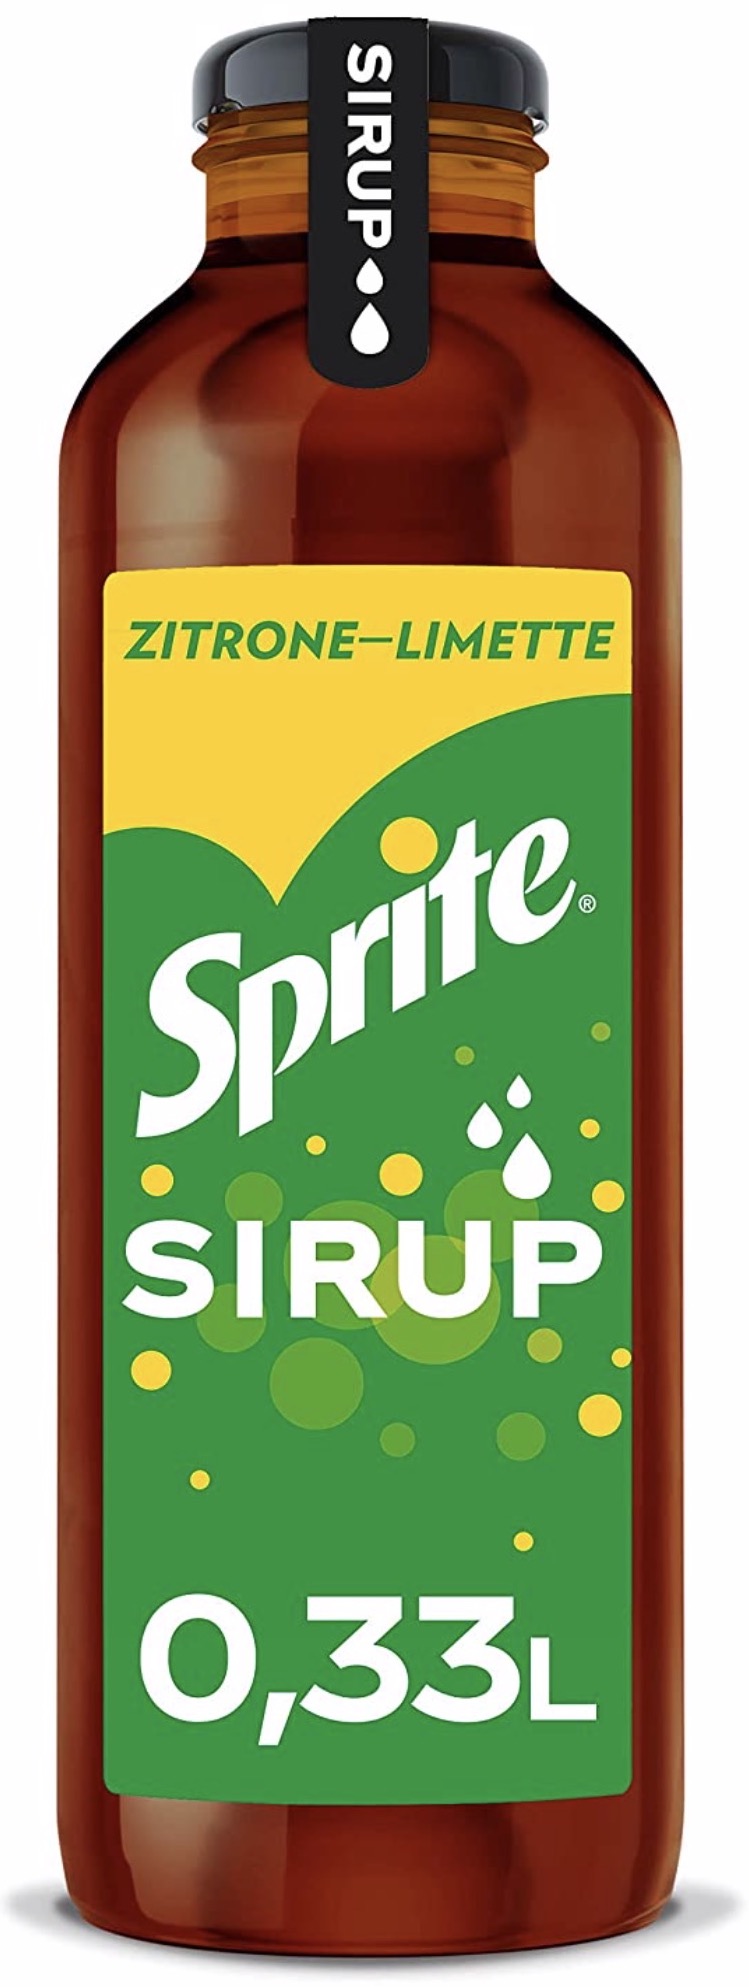 Sprite Sirup Zitrone-Limette 0,33L